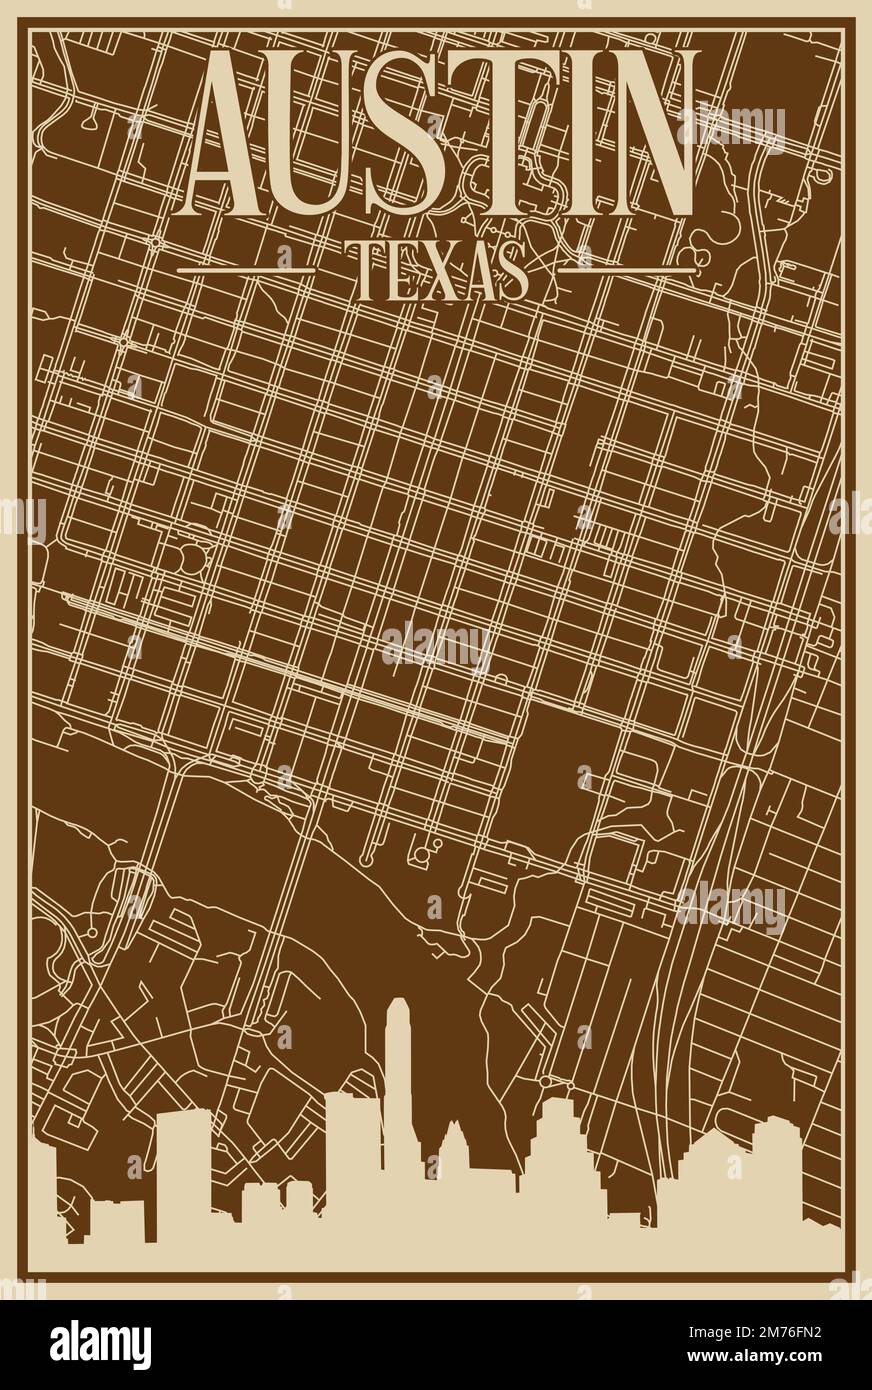 Braunes, handgezeichnetes Poster über die Innenstadt VON AUSTIN, TEXAS, mit hervorgehobener Oldtimer-Skyline und Schriftzug Stock Vektor